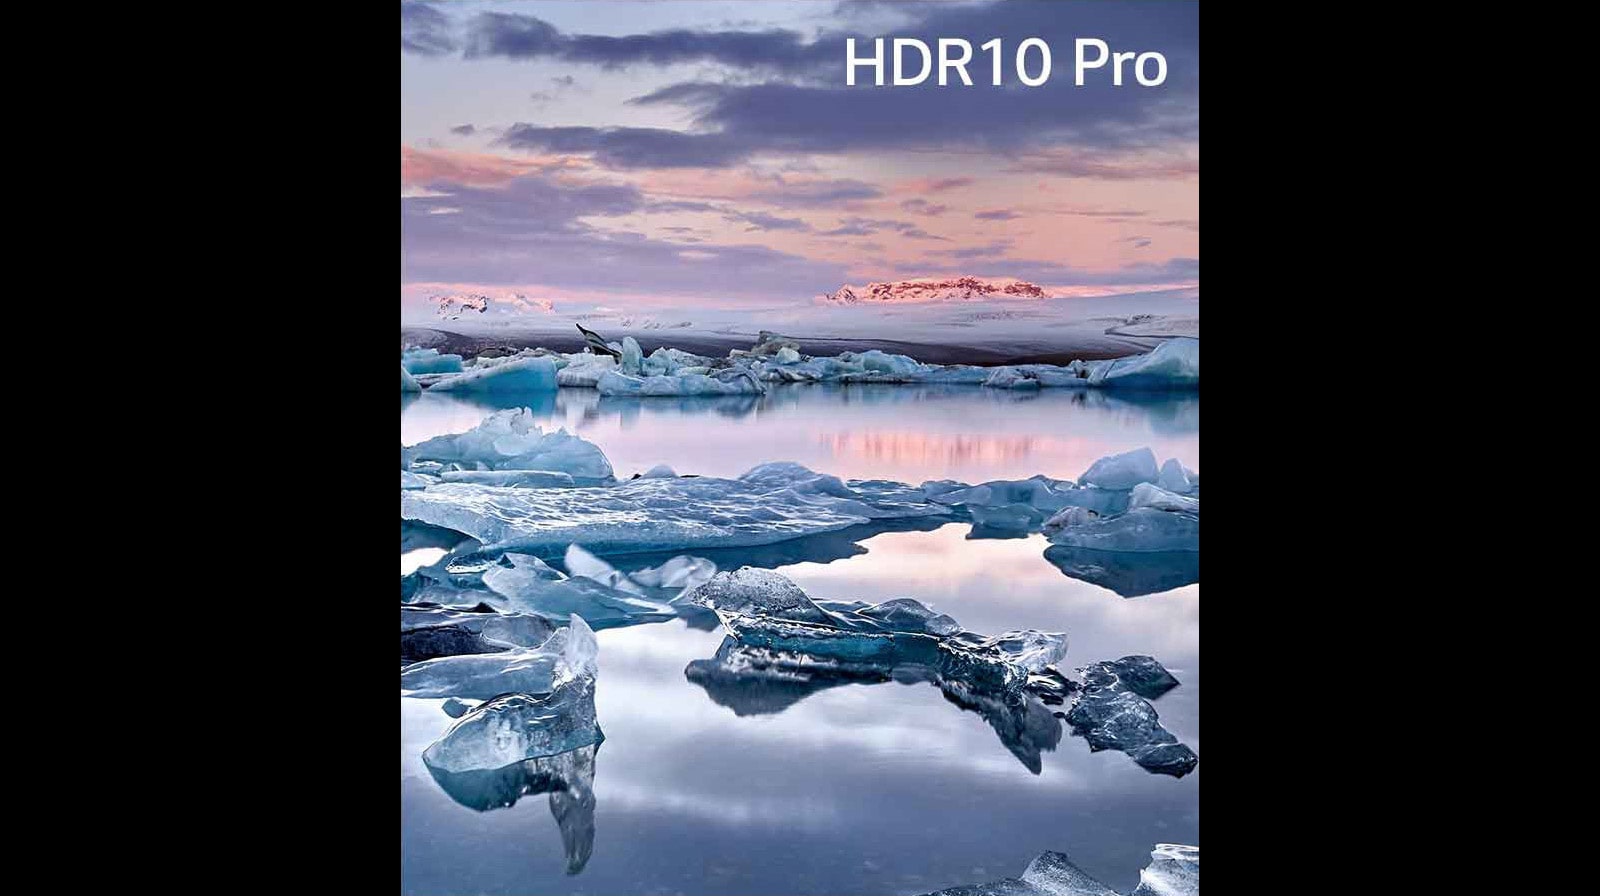 LG UHD TV 4K, série UQ80, Processador α5 Gen5 AI, webOS 22 - 65UQ80006LB